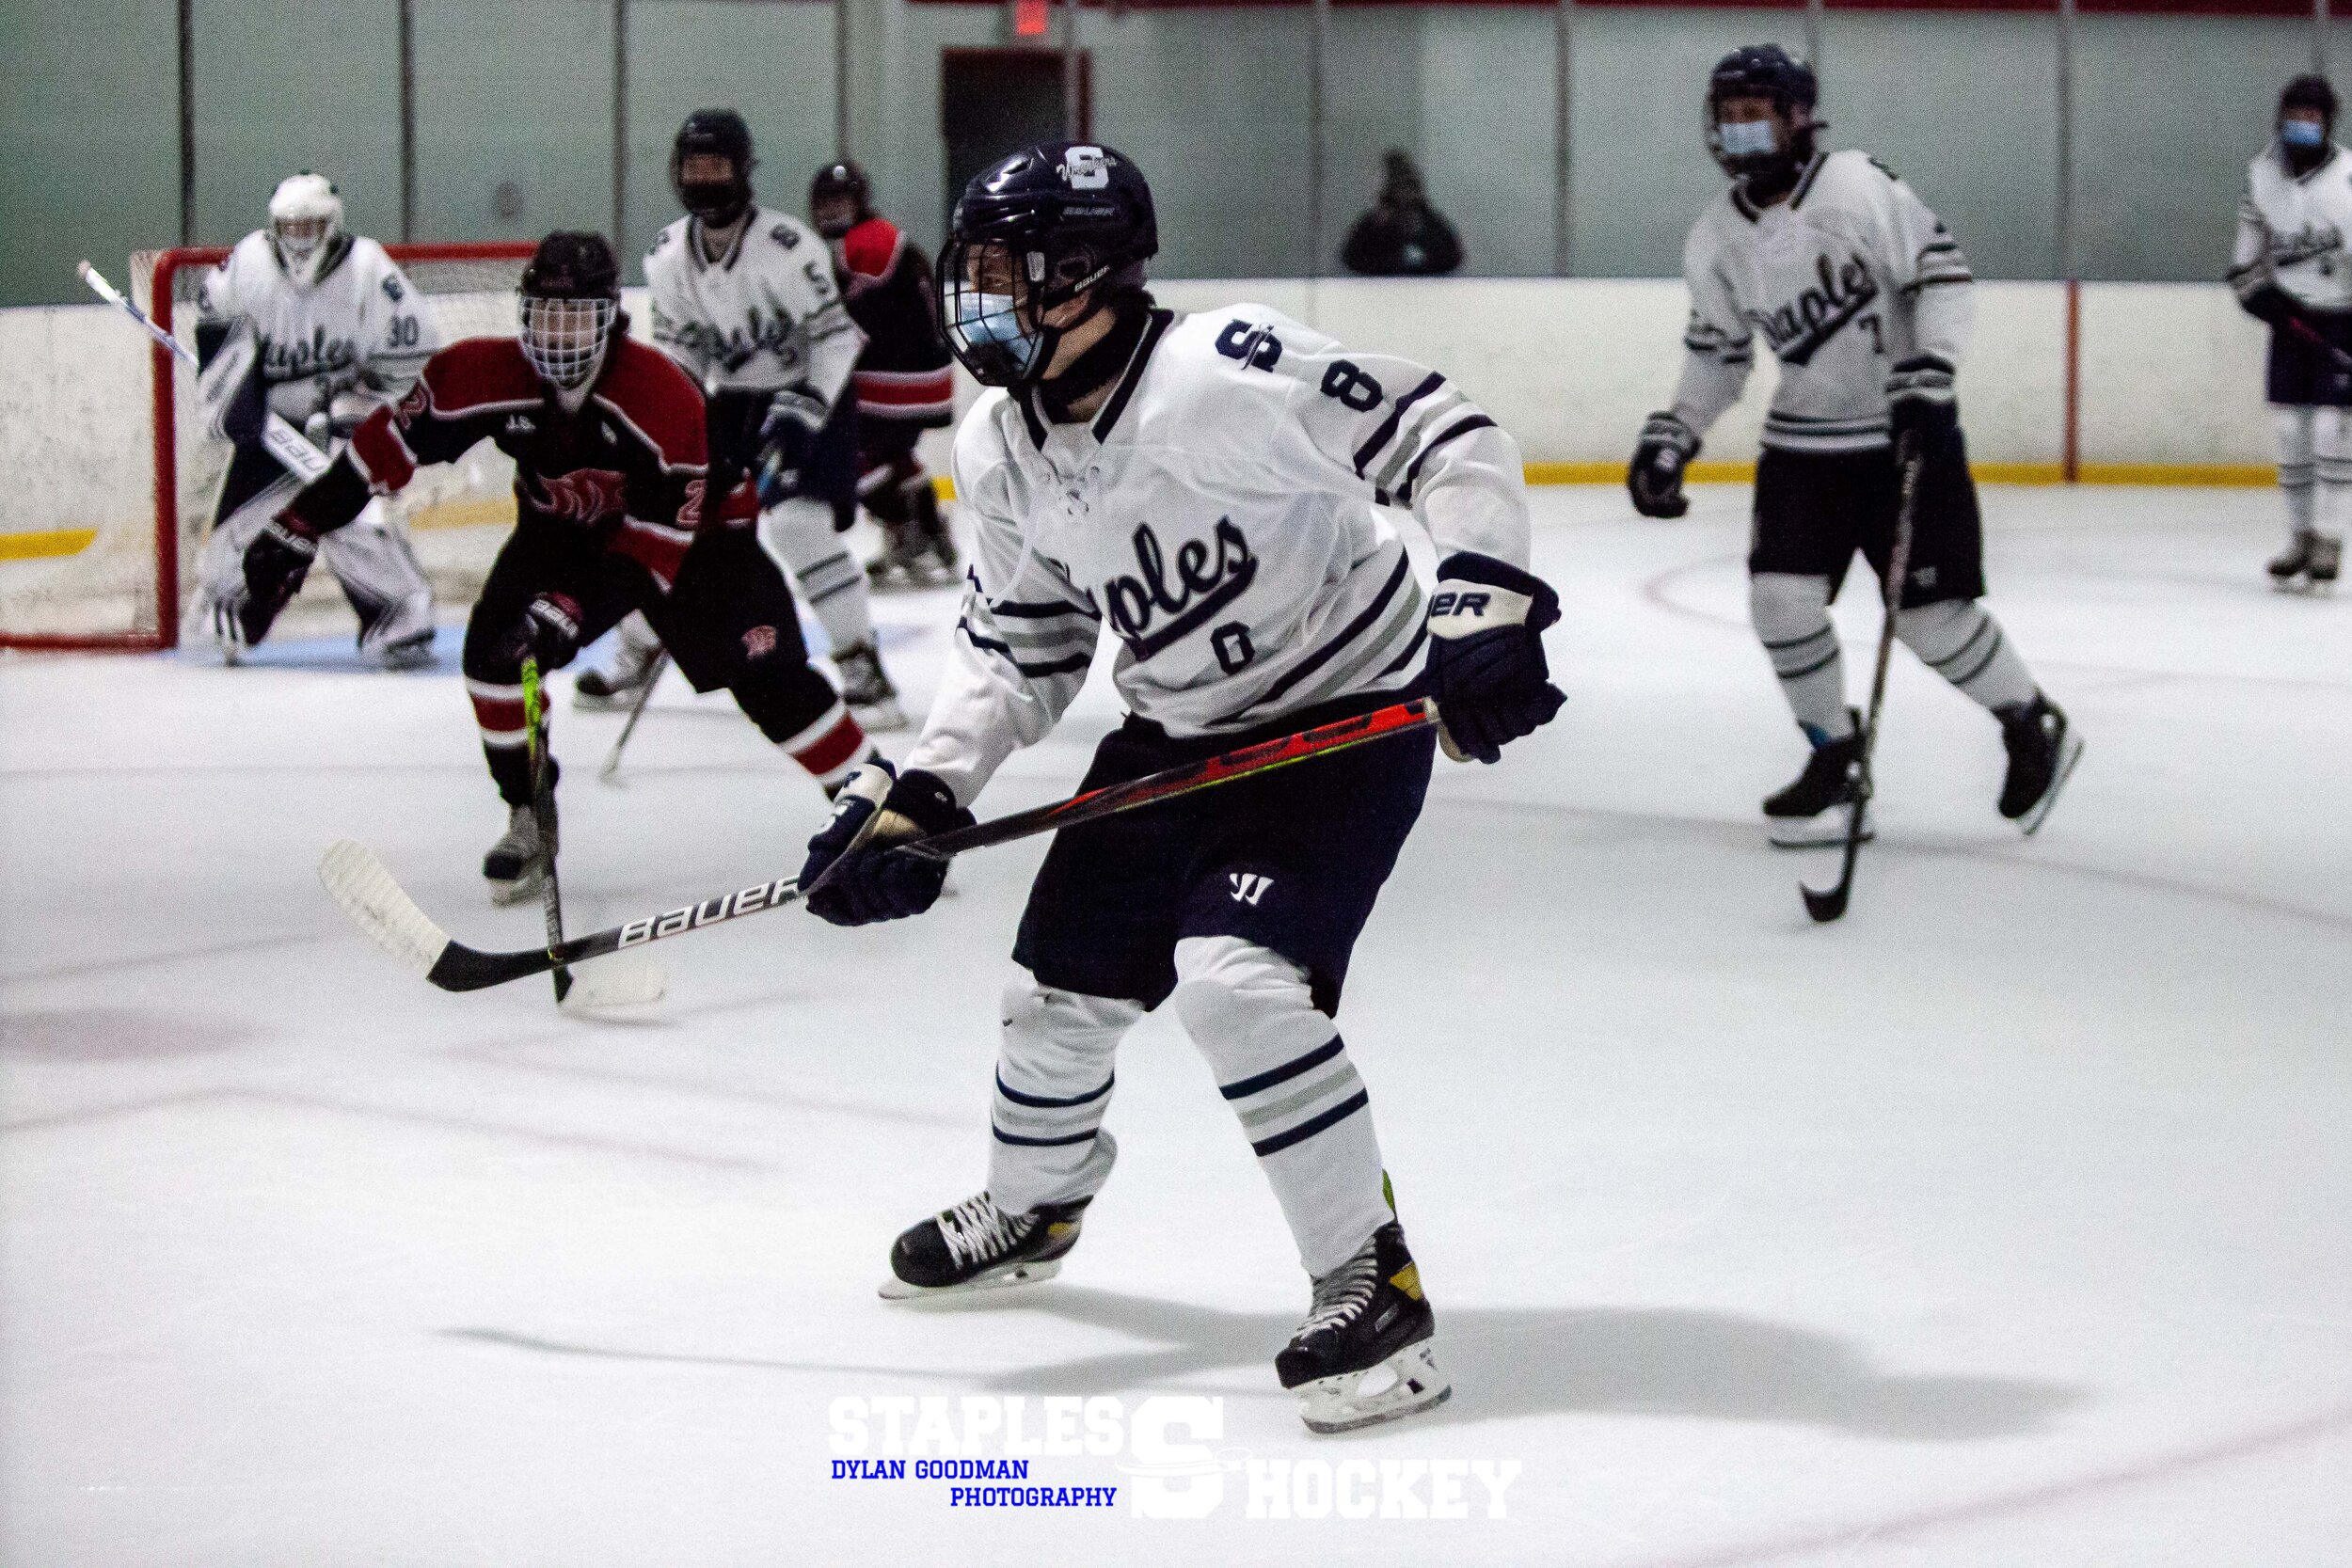 103-Staples Varsity Boys Hockey vs. Masuk - February 27, 2021 - Dylan Goodman Photography.jpg